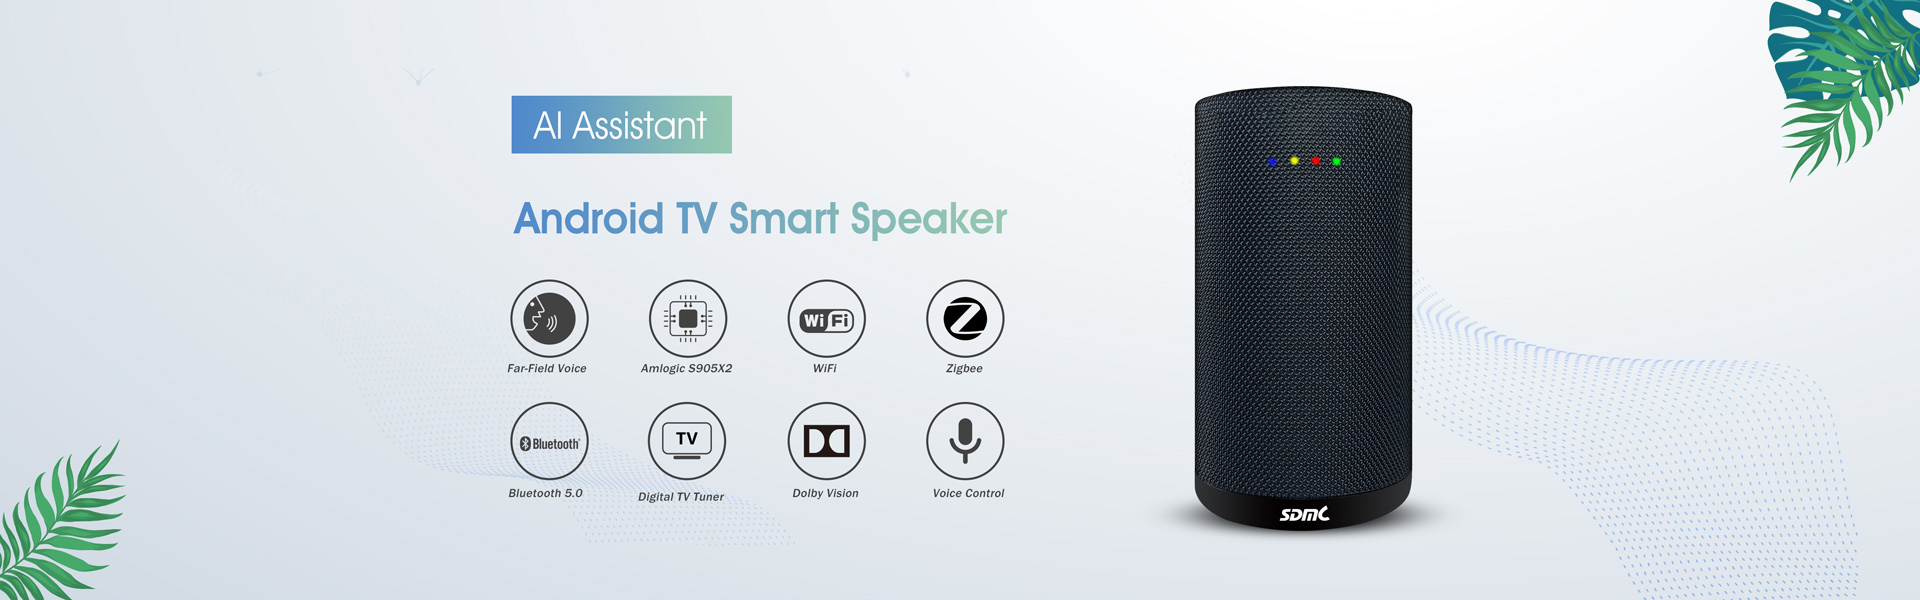 android tv box,wifi mesh router,smart speaker,Shenzhen SDMC Technology Co.,Ltd